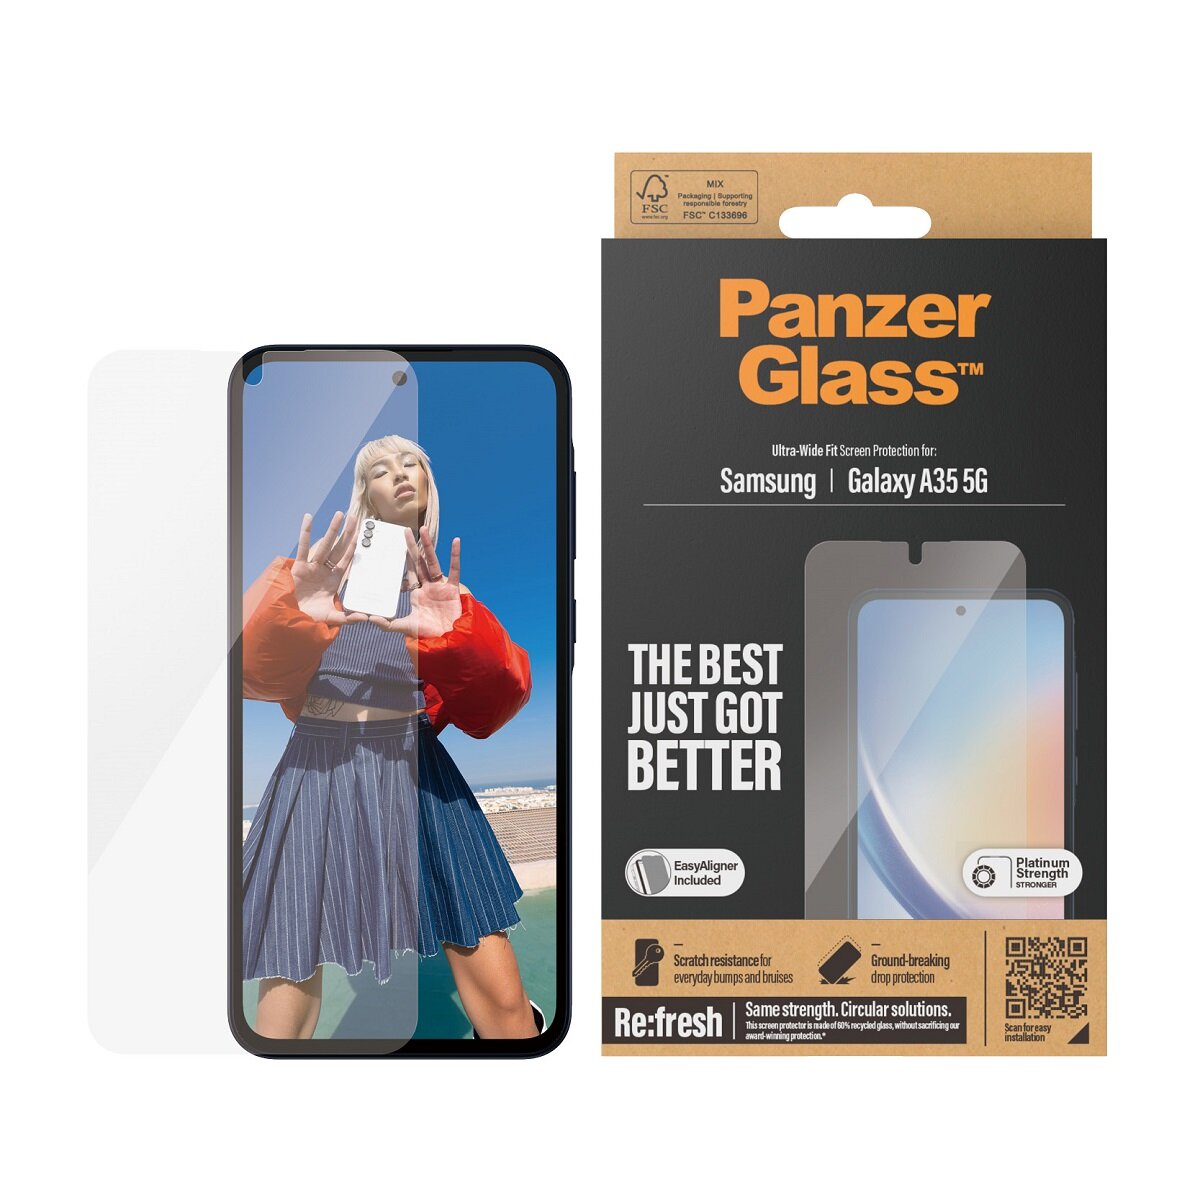 Szkło ochronne PanzerGlass Ultra-Wide Fit Galaxy A35 5G wraz z telefonem oraz opakowanie od frontu